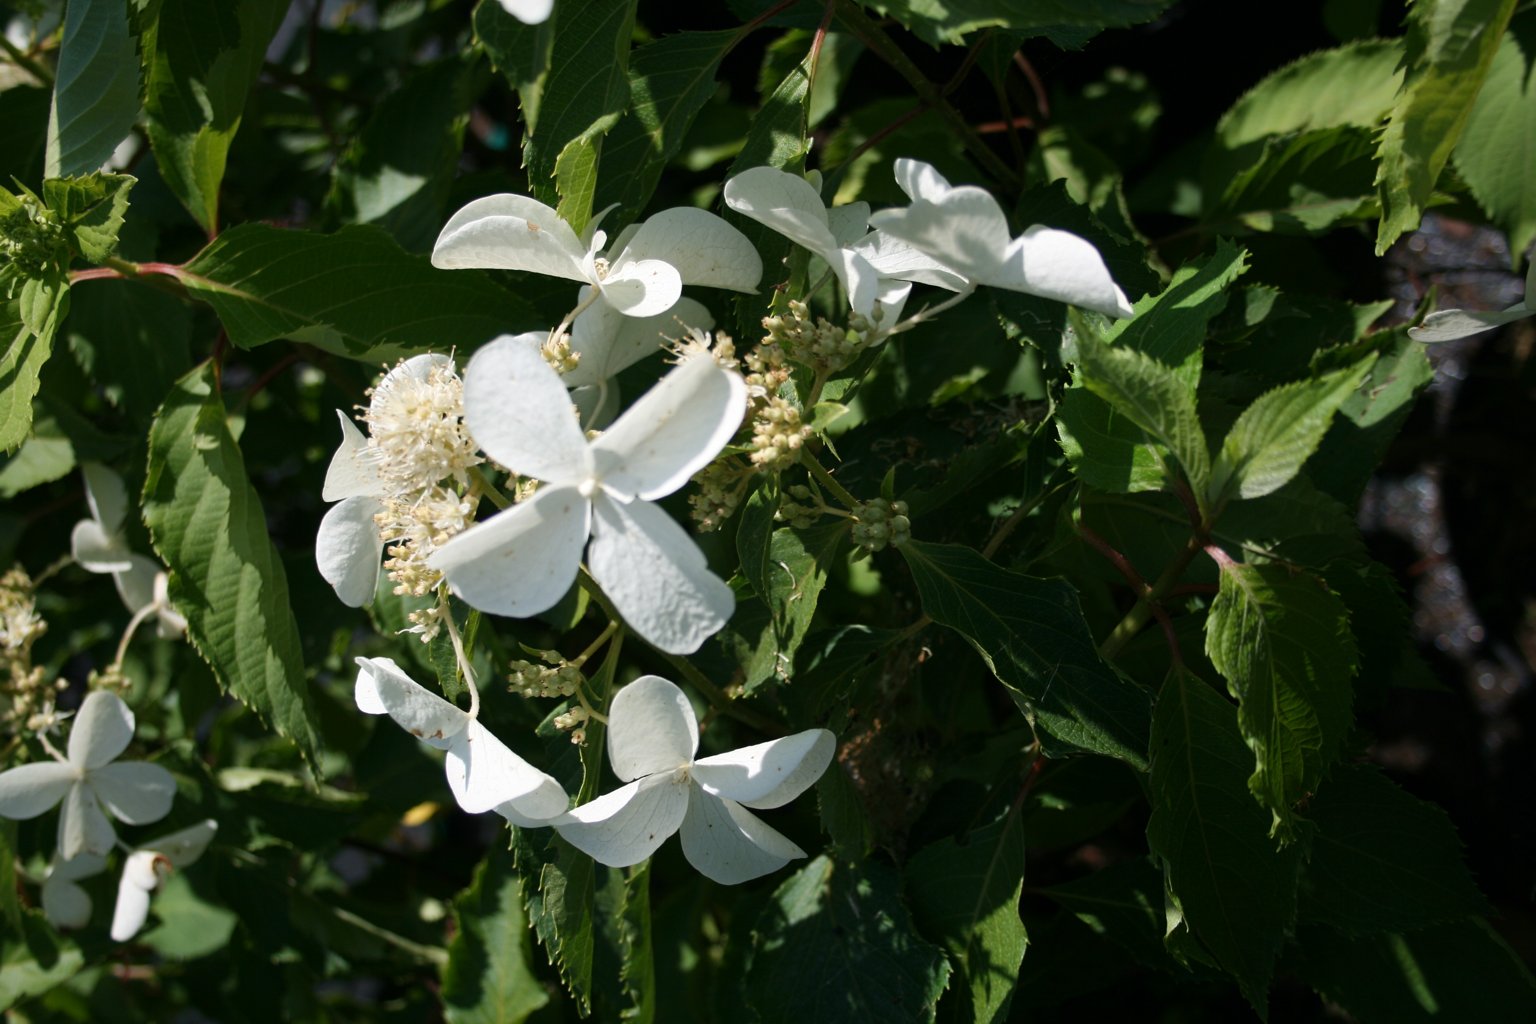 Hortensja bukietowa "Levana" / Hydrangea paniculata "Levana"